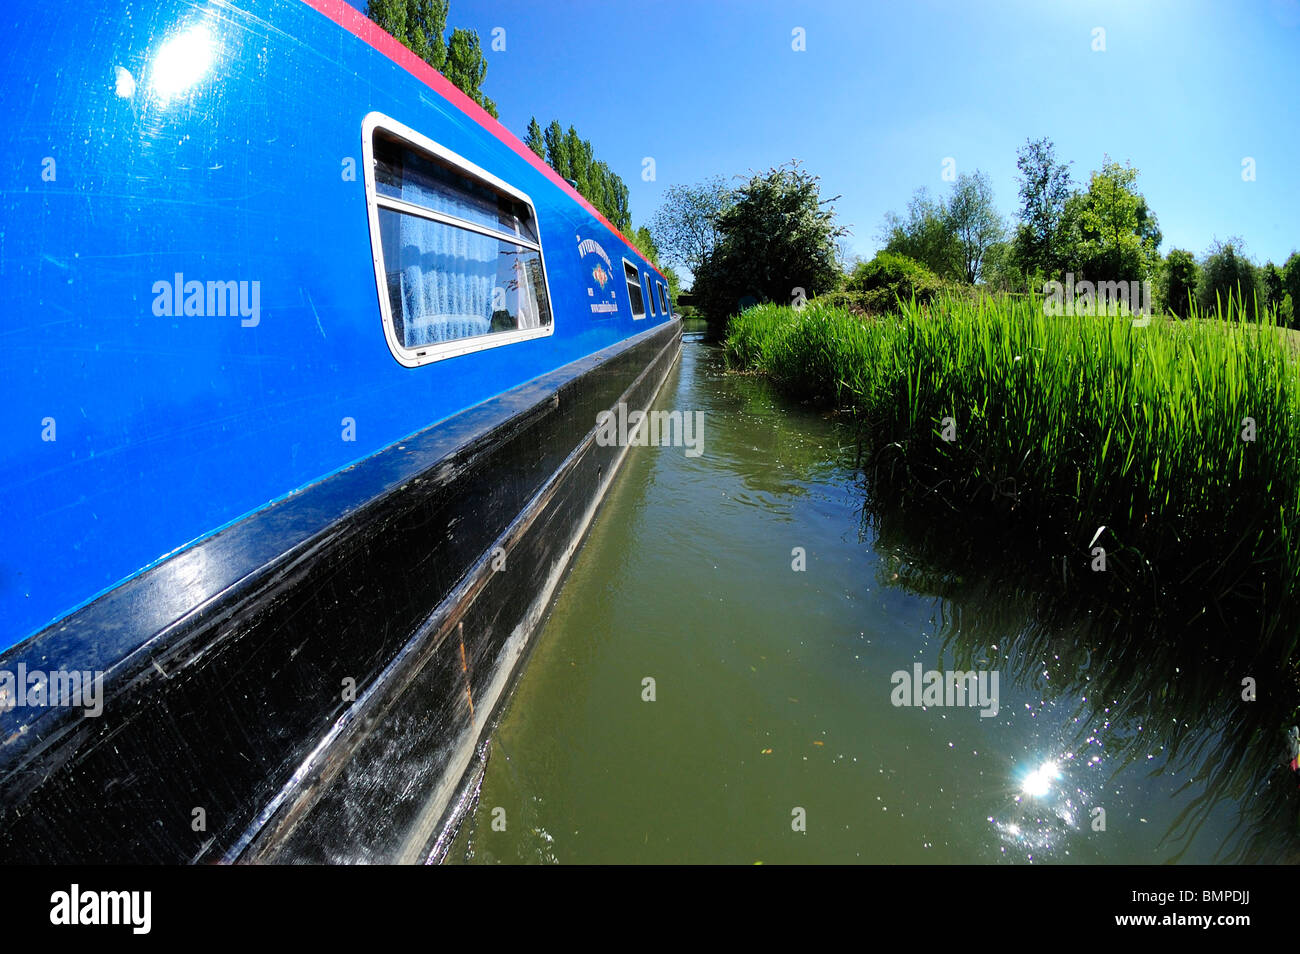 Lato della barca stretta, Grand Union Canal, REGNO UNITO Foto Stock